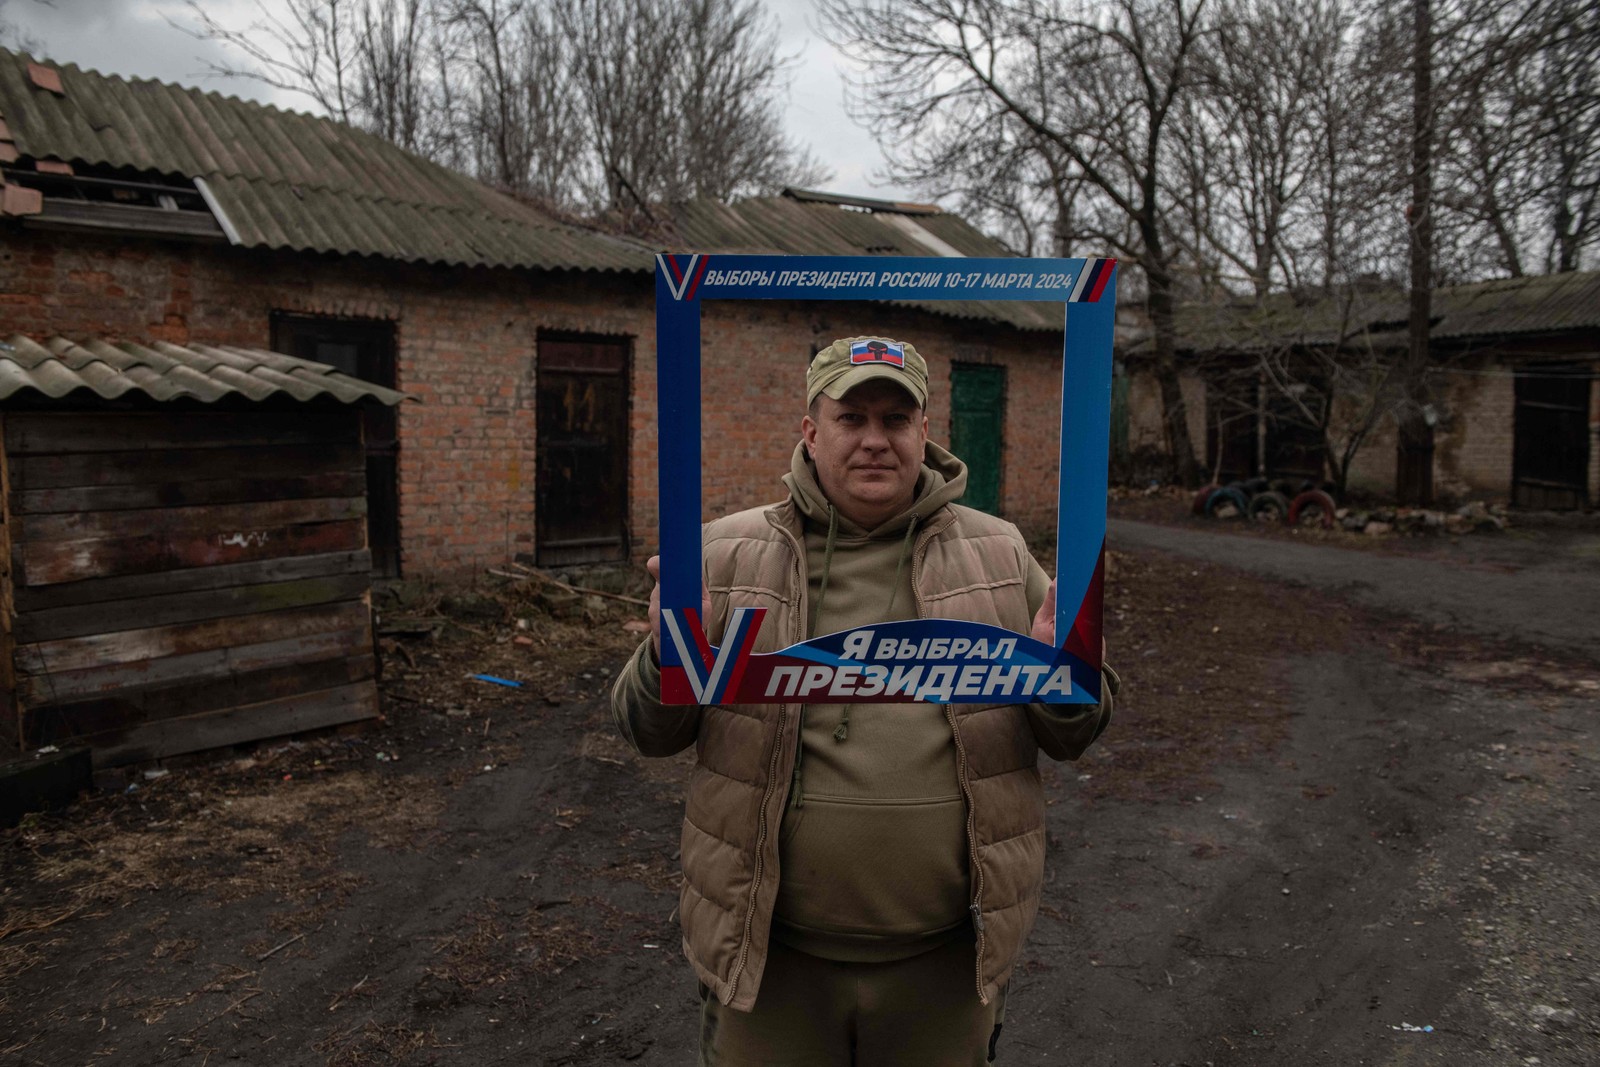 Homem posa com uma moldura em que se lê "Escolhi um presidente" em Donetsk, na Ucrânia, controlada pela Rússia, em meio ao conflito Rússia-Ucrânia — Foto: AFP